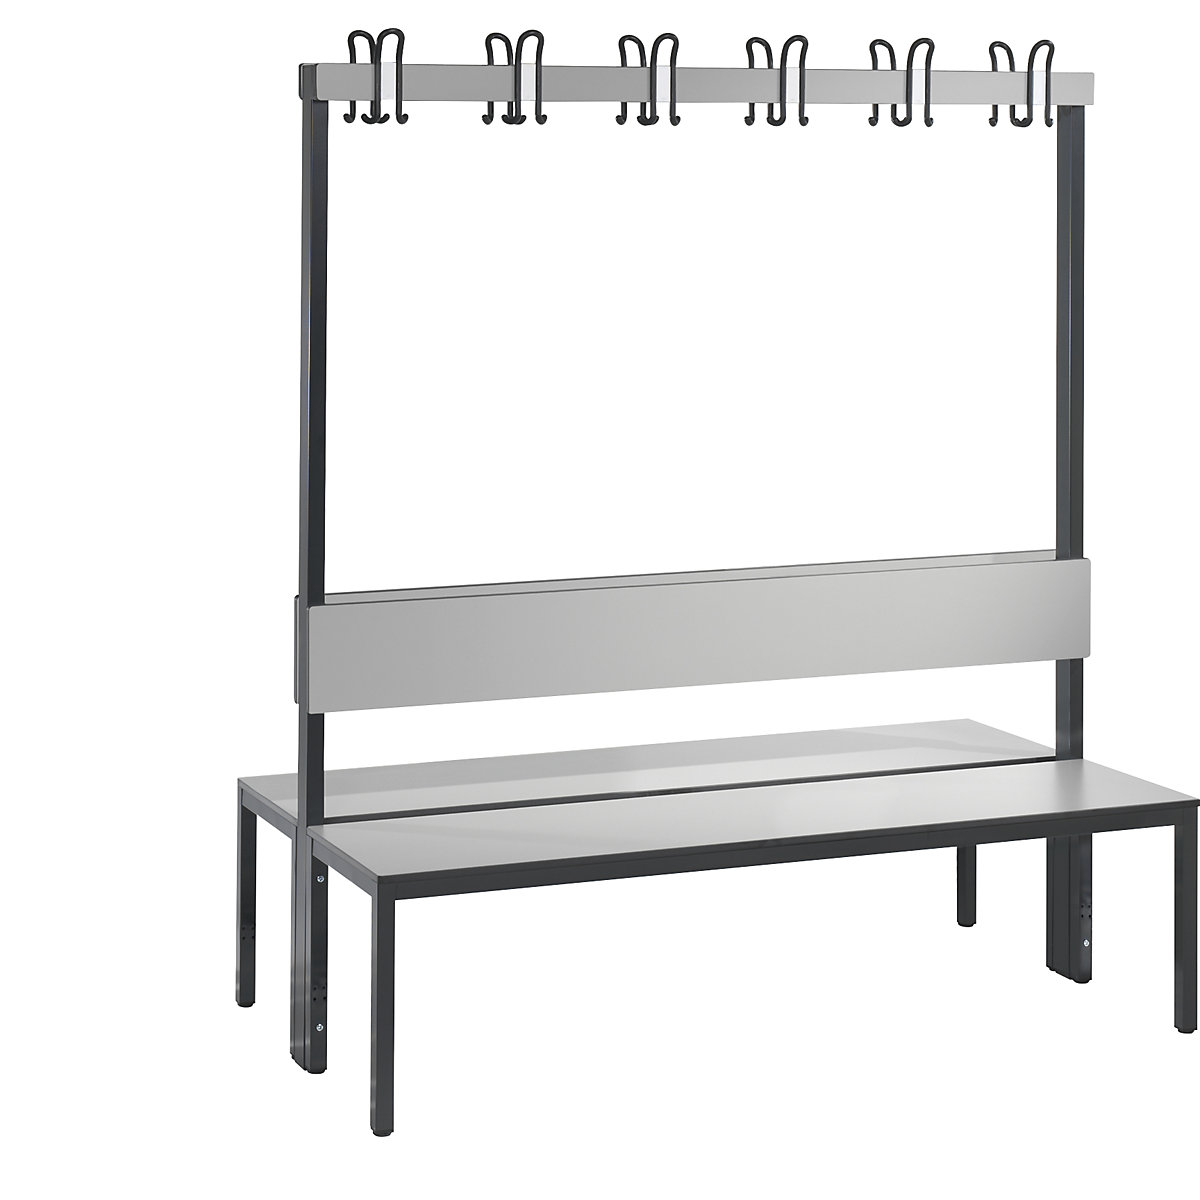 Banc de vestiaire BASIC PLUS double face – C+P, surface de l'assise en stratifié HPL, barre à patères, longueur 1500 mm, gris argent-4